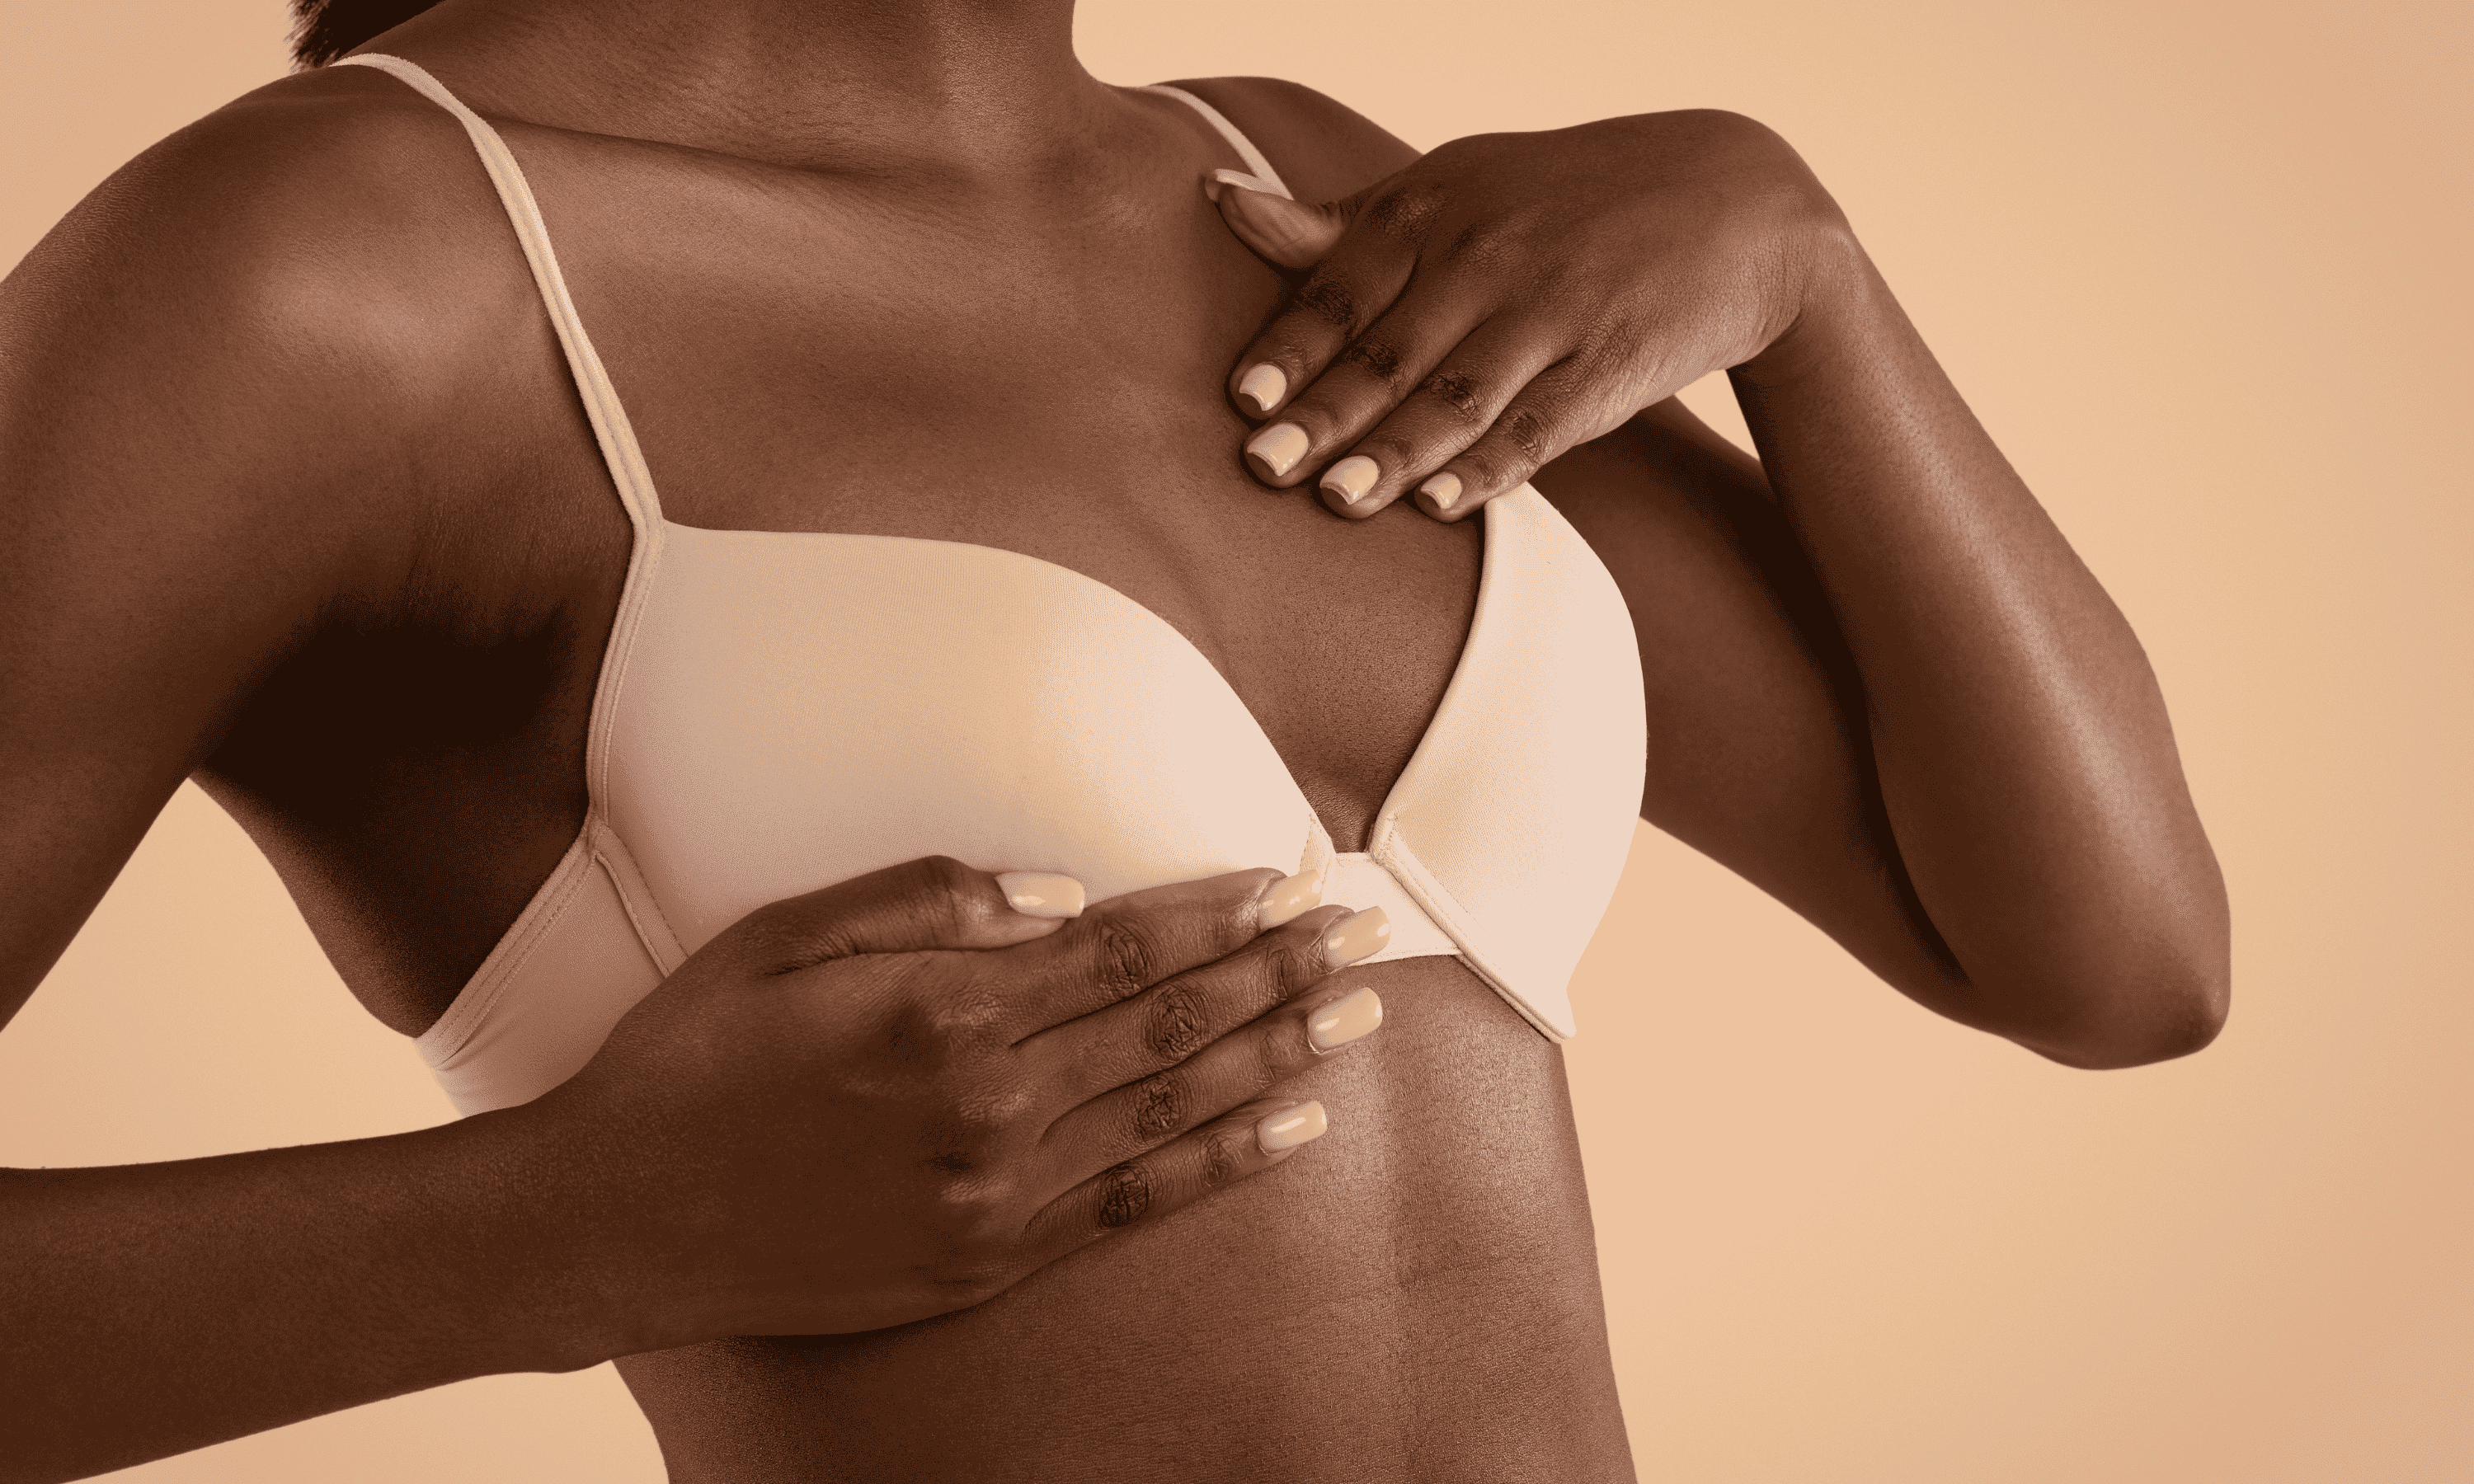 Les risques de la réduction mammaire